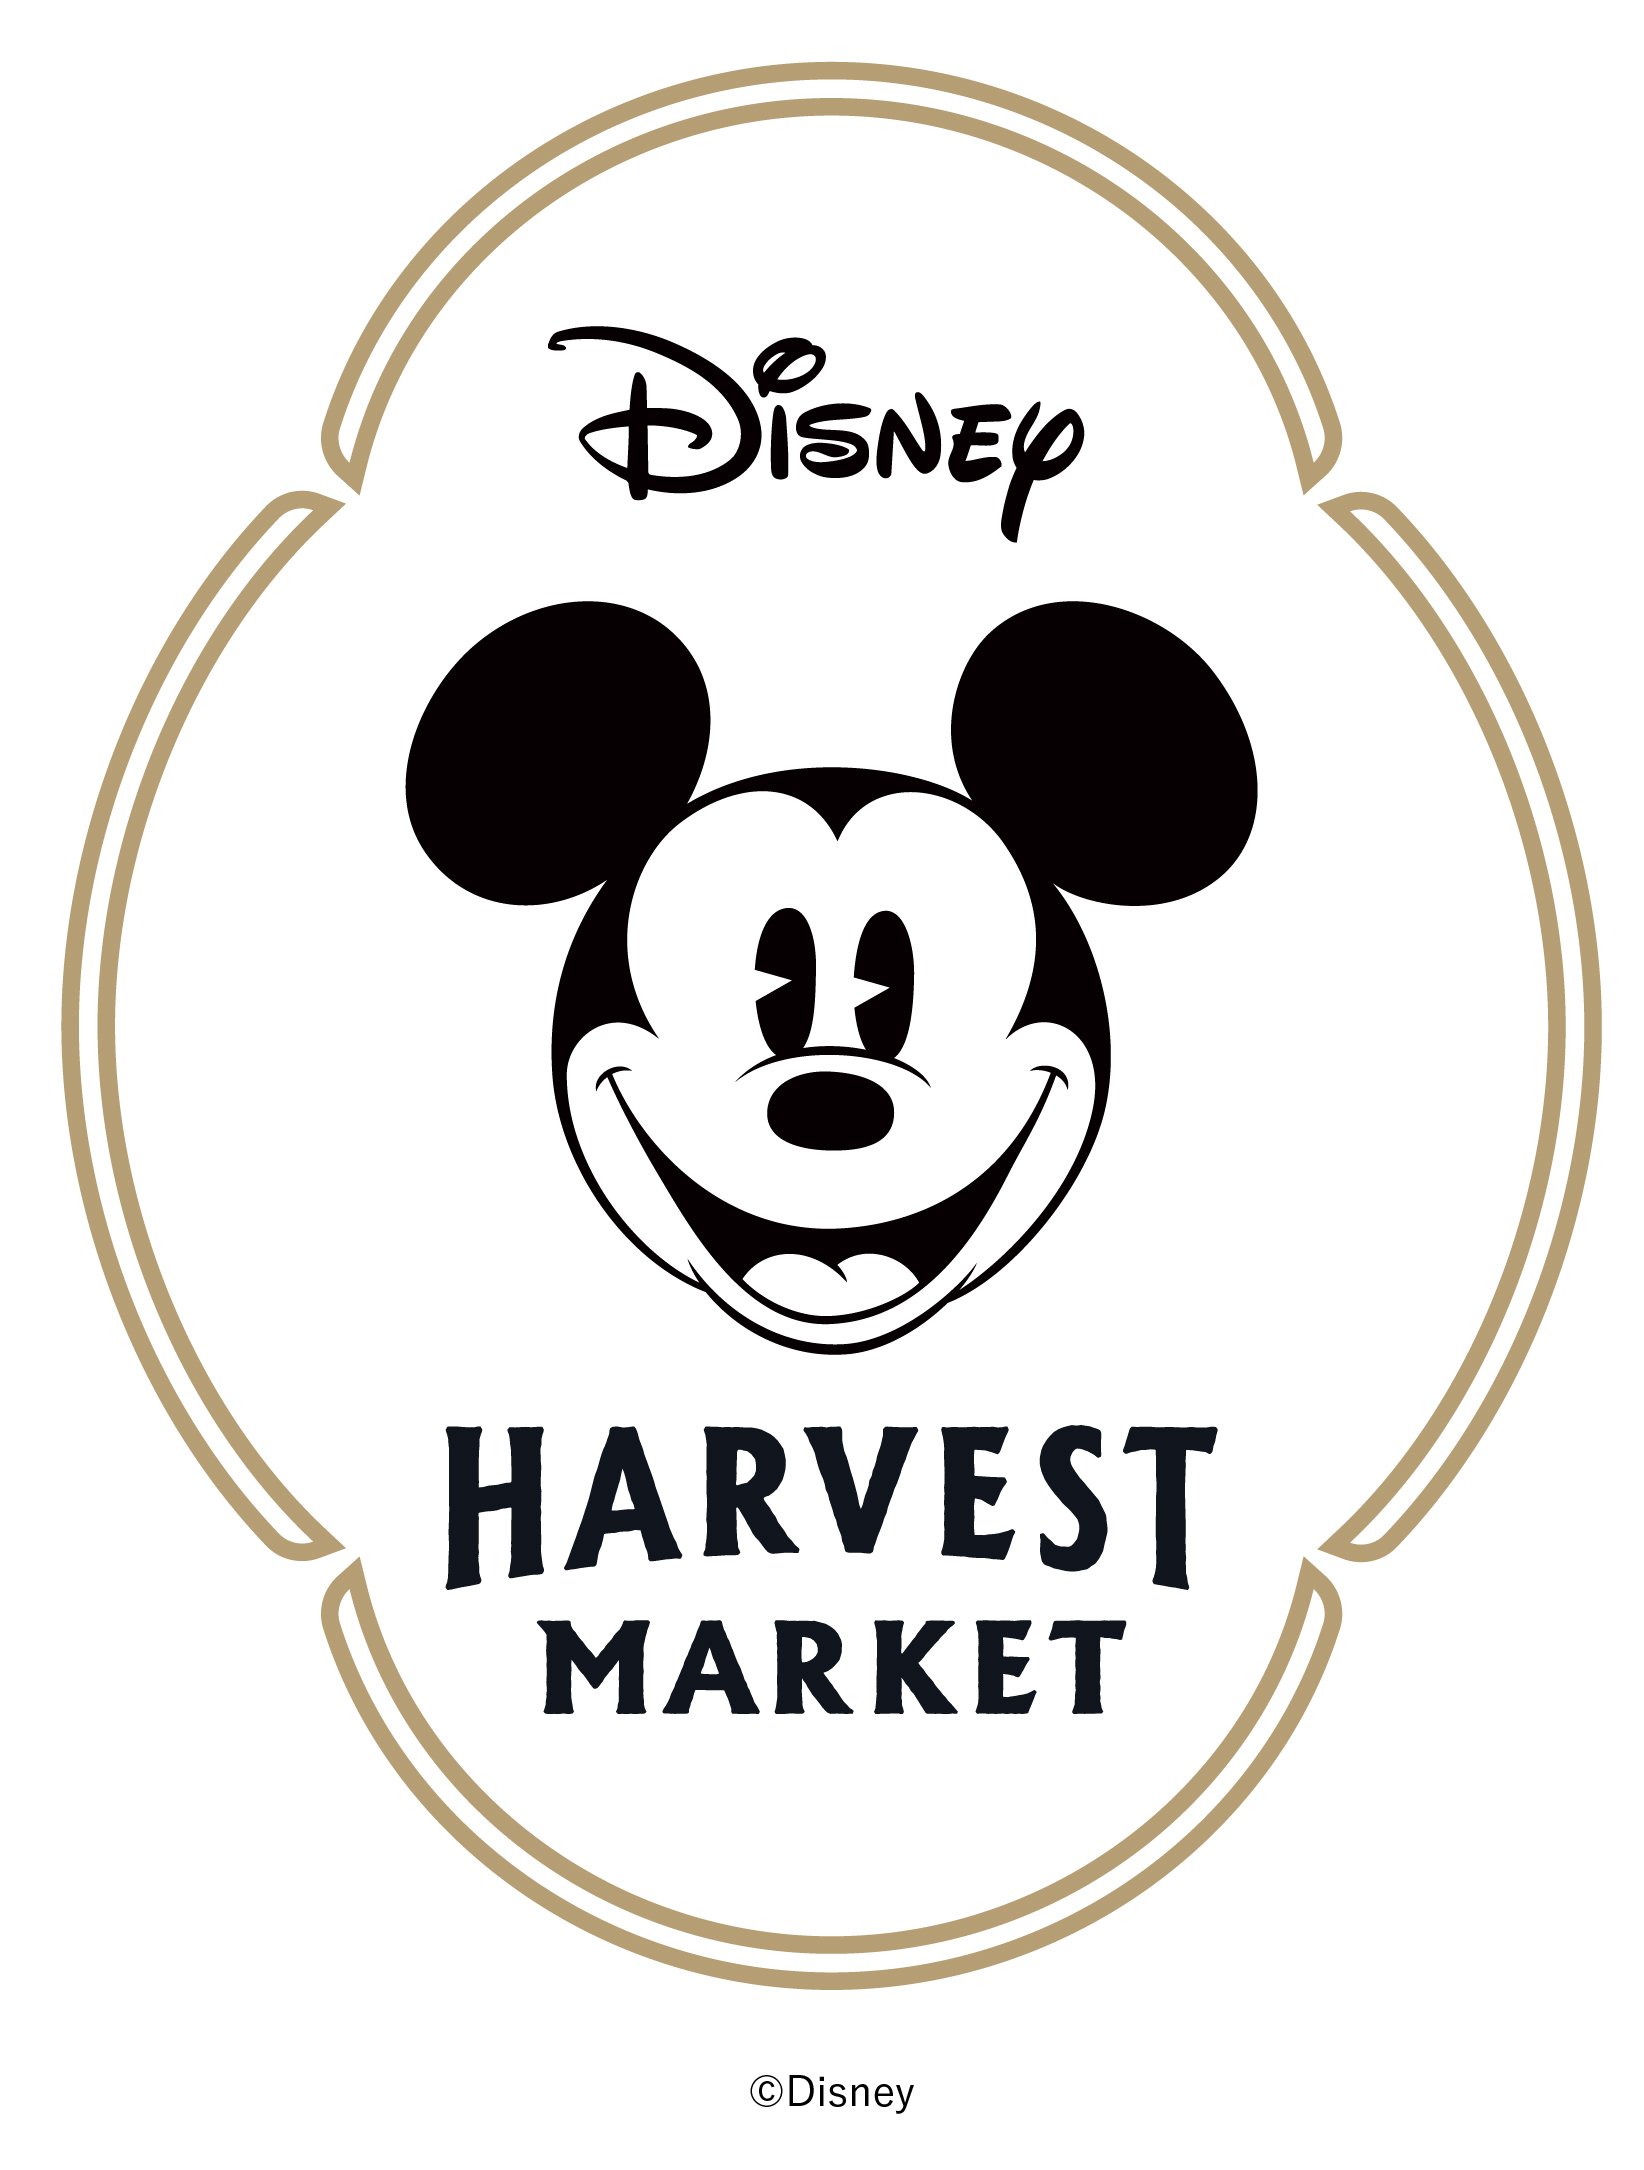 今春 カフェ ギフトショップ Disney Harvest Market が 渋谷ヒカリエ 7fにオープン カフェ カンパニー株式会社のプレスリリース